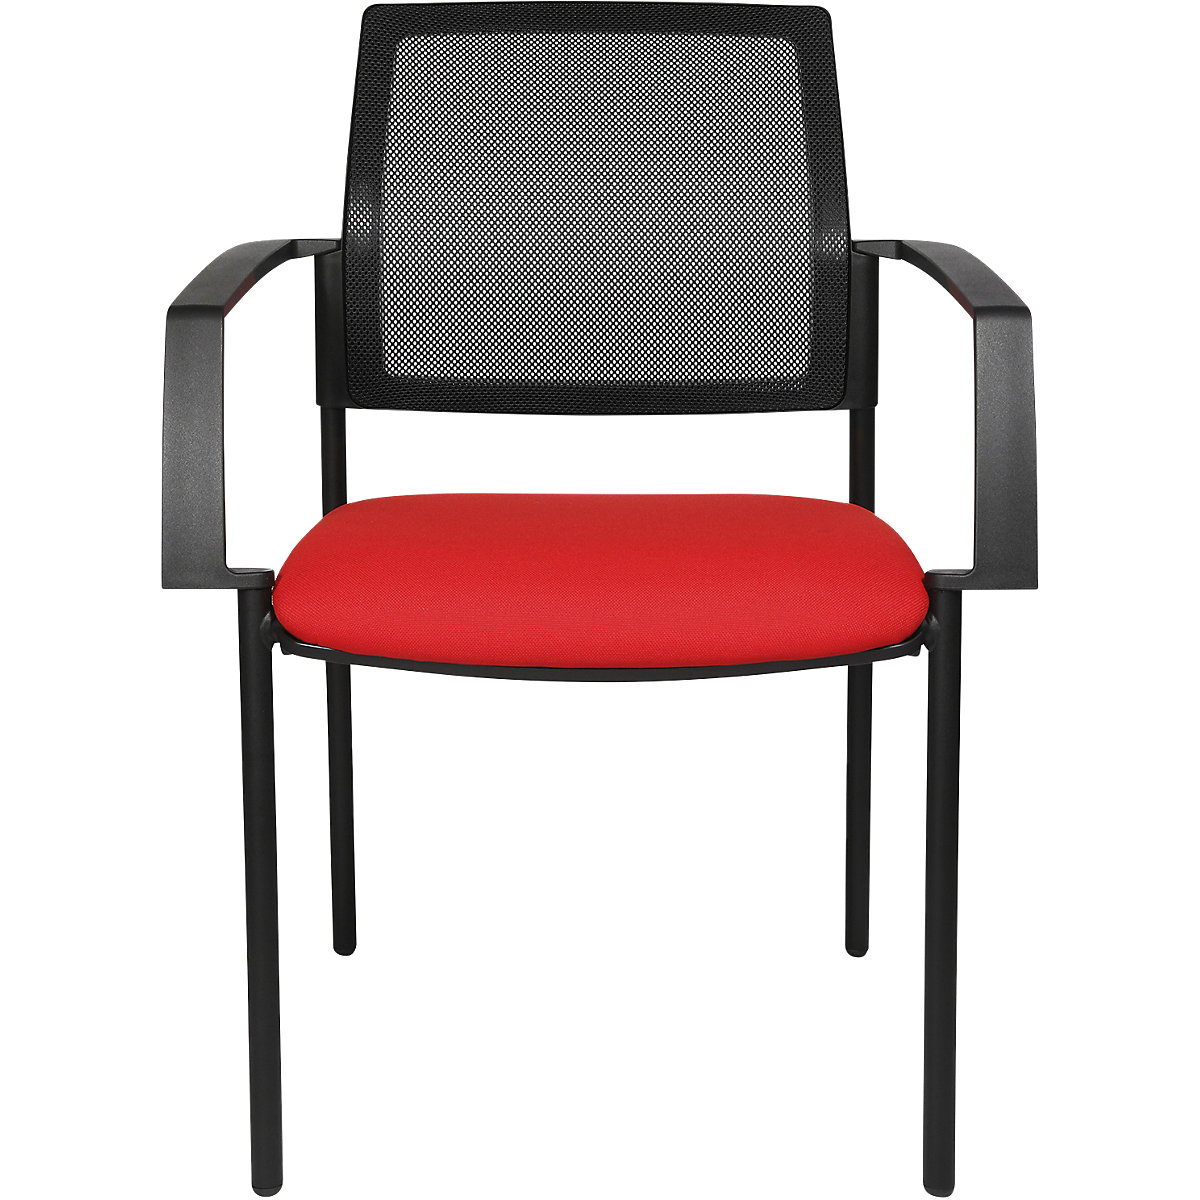 Stohovacia stolička zo sieťoviny – Topstar, so 4 nohami, OJ 2 ks, sedadlo červená, podstavec čierna-3